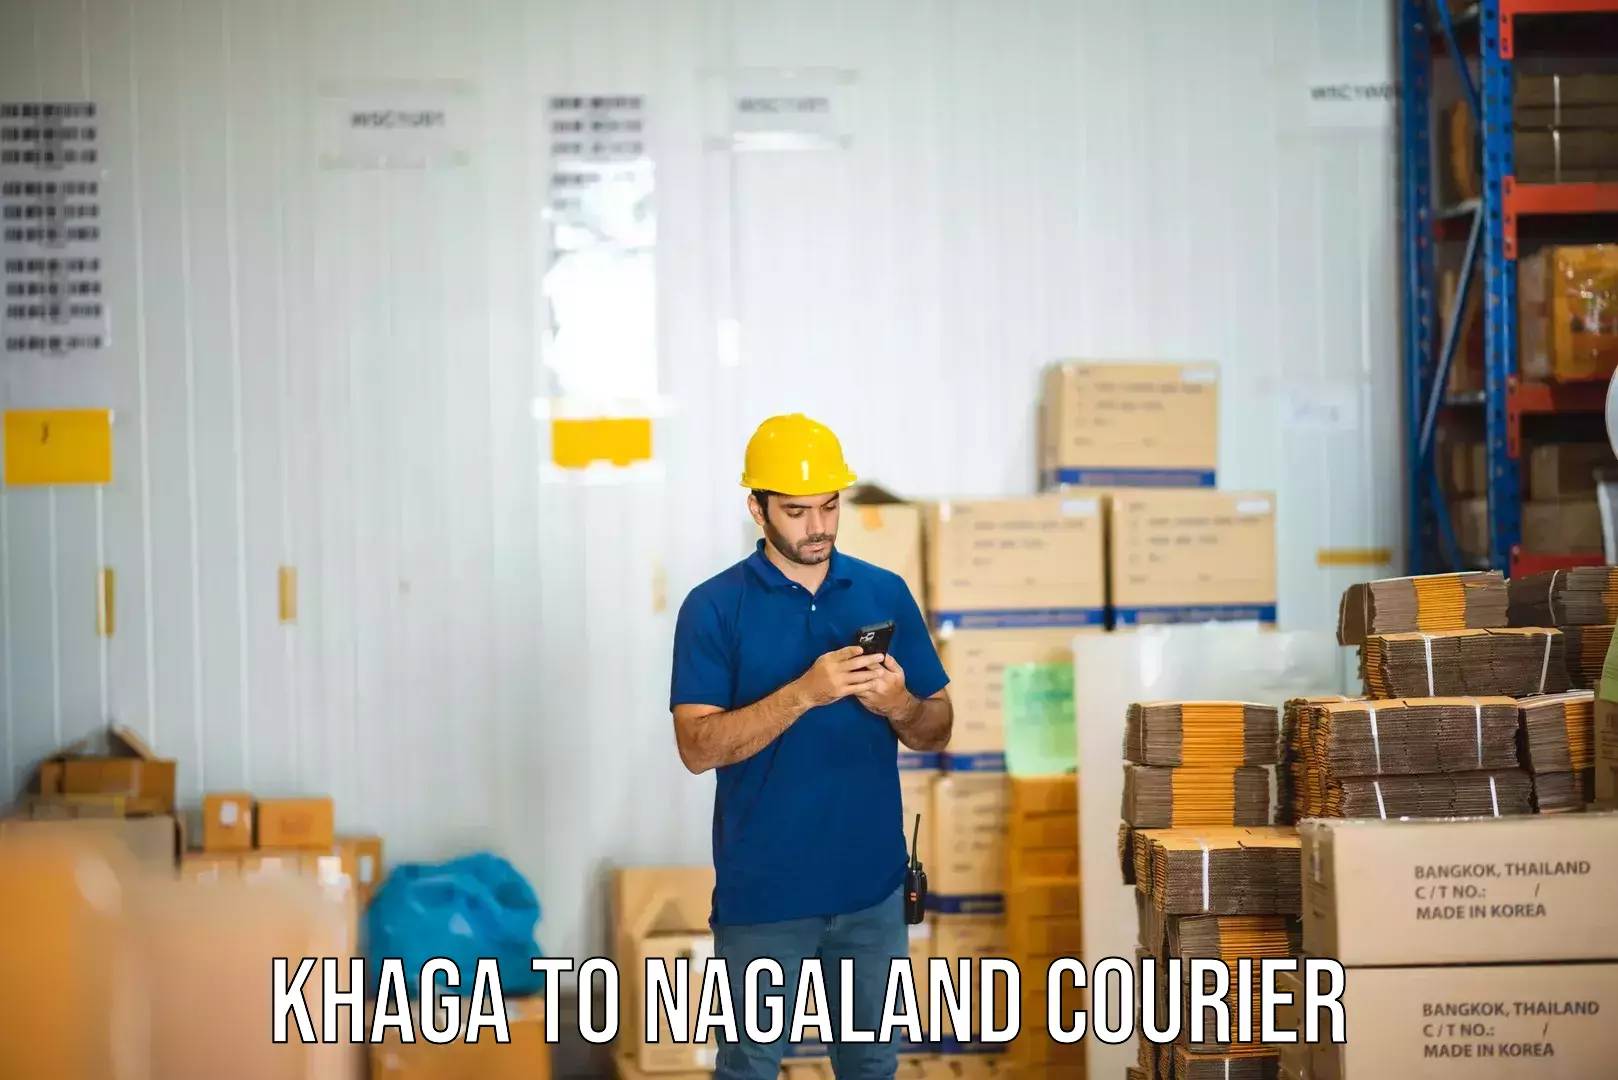 Comprehensive freight services Khaga to Nagaland